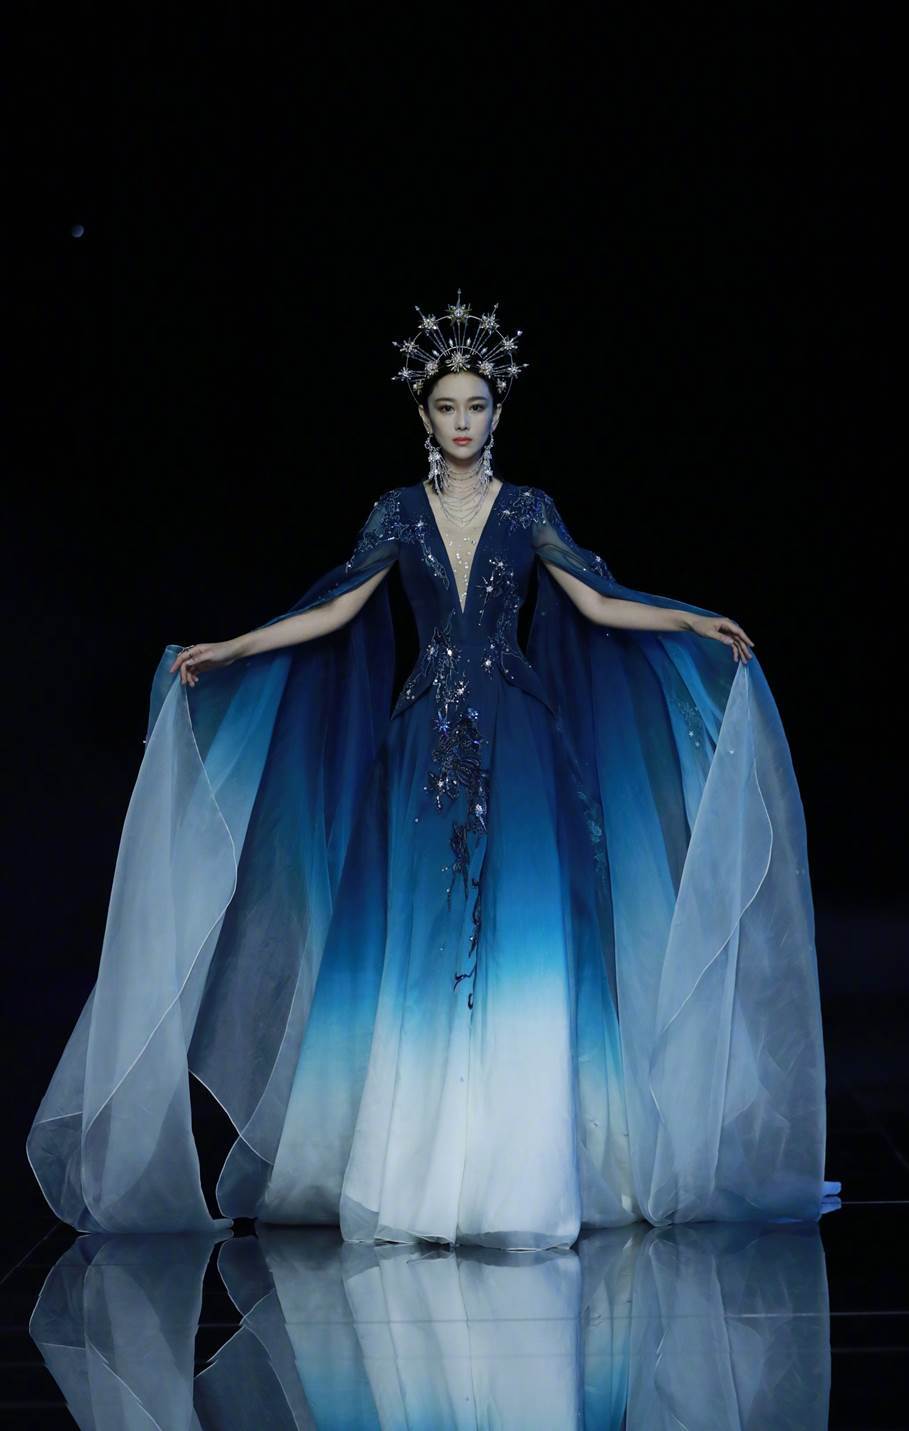 古风高定品牌盖娅传说诠释绝美中国风!张馨予一席深v礼服,美轮美奂